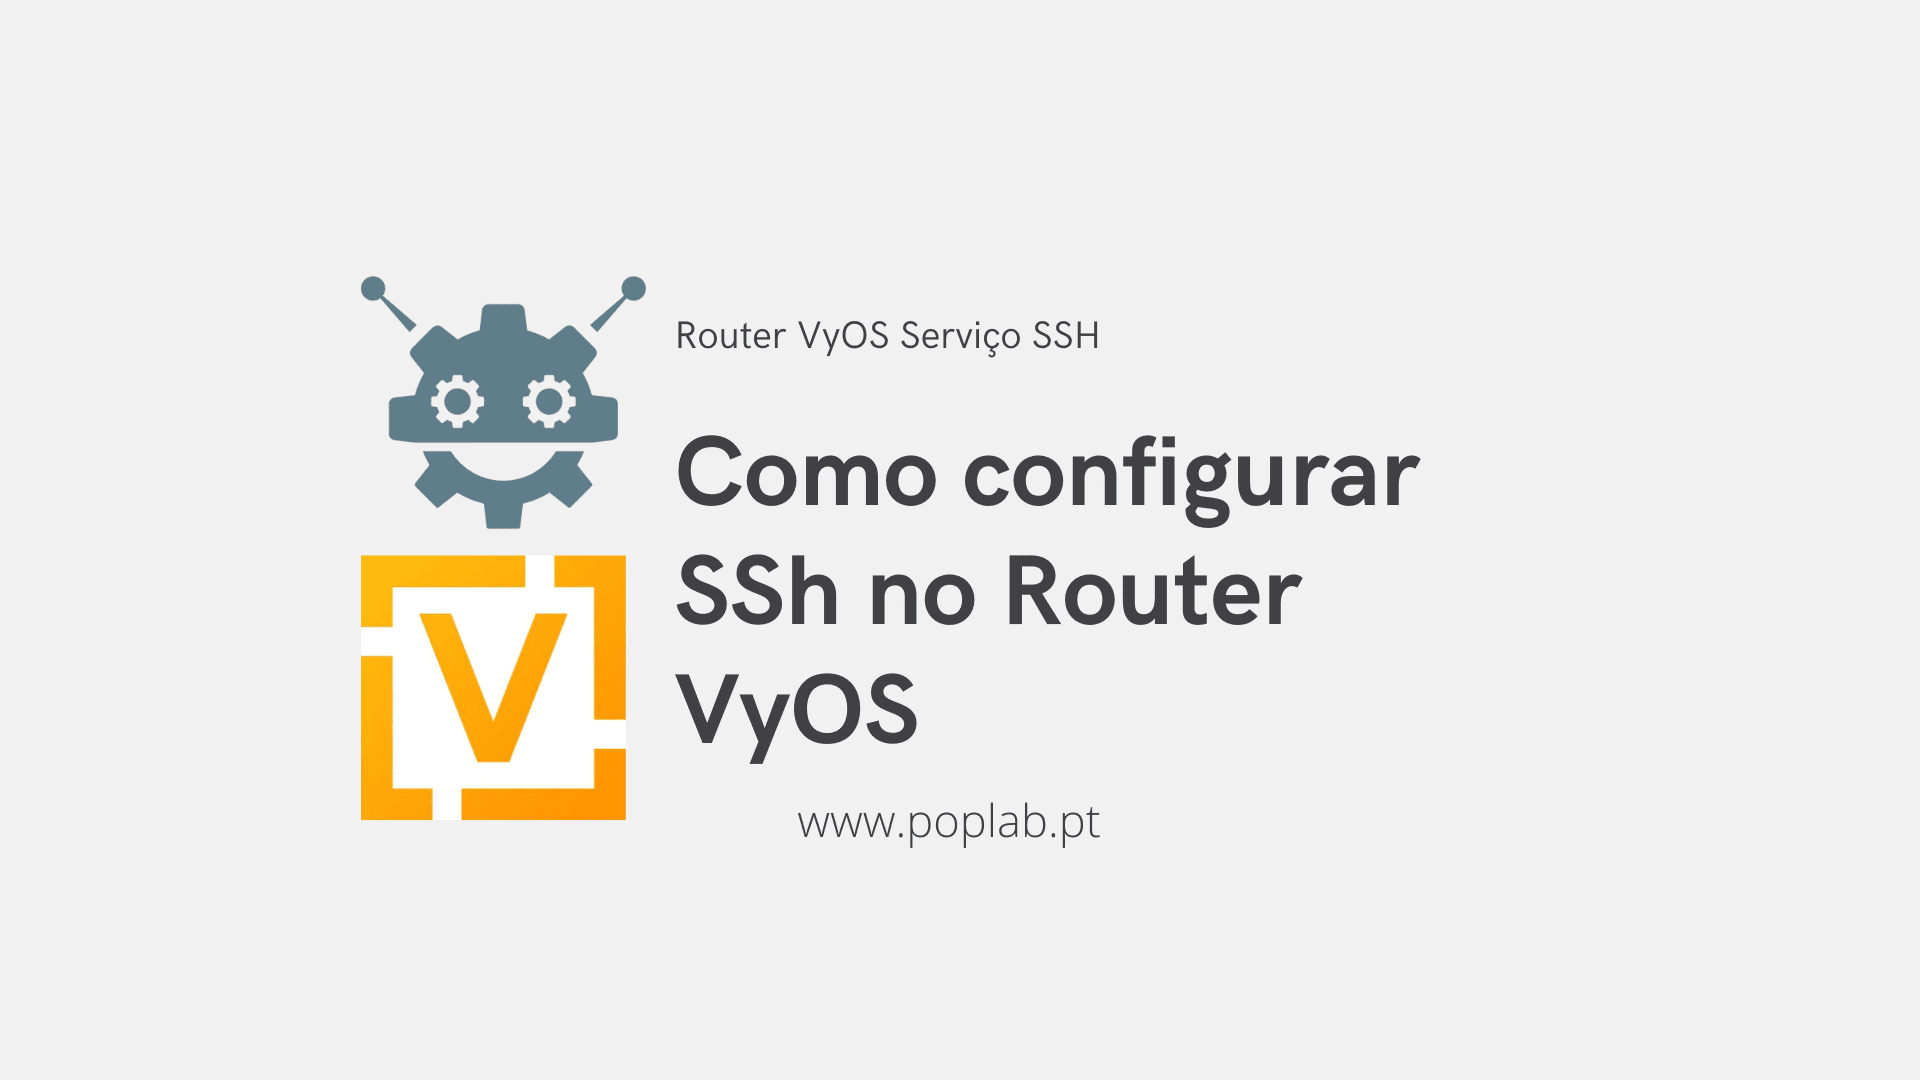 Router VyOS: Como configurar SSH